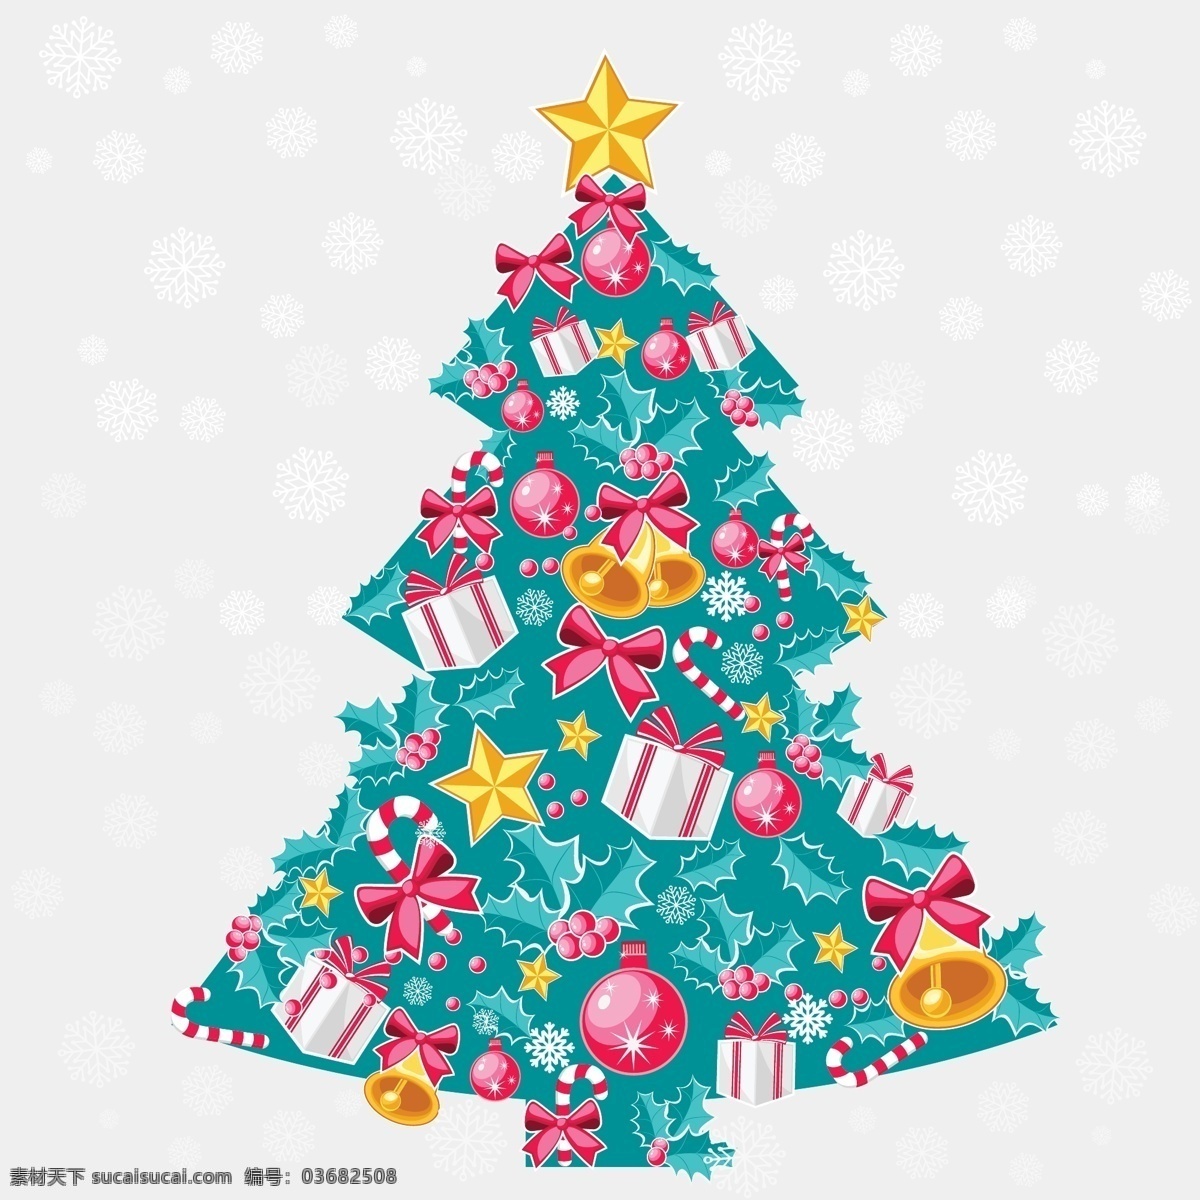 矢量 抽象 圣诞树 底纹 花纹 礼盒 礼物 铃铛 矢量素材 星星 节日素材 其他节日